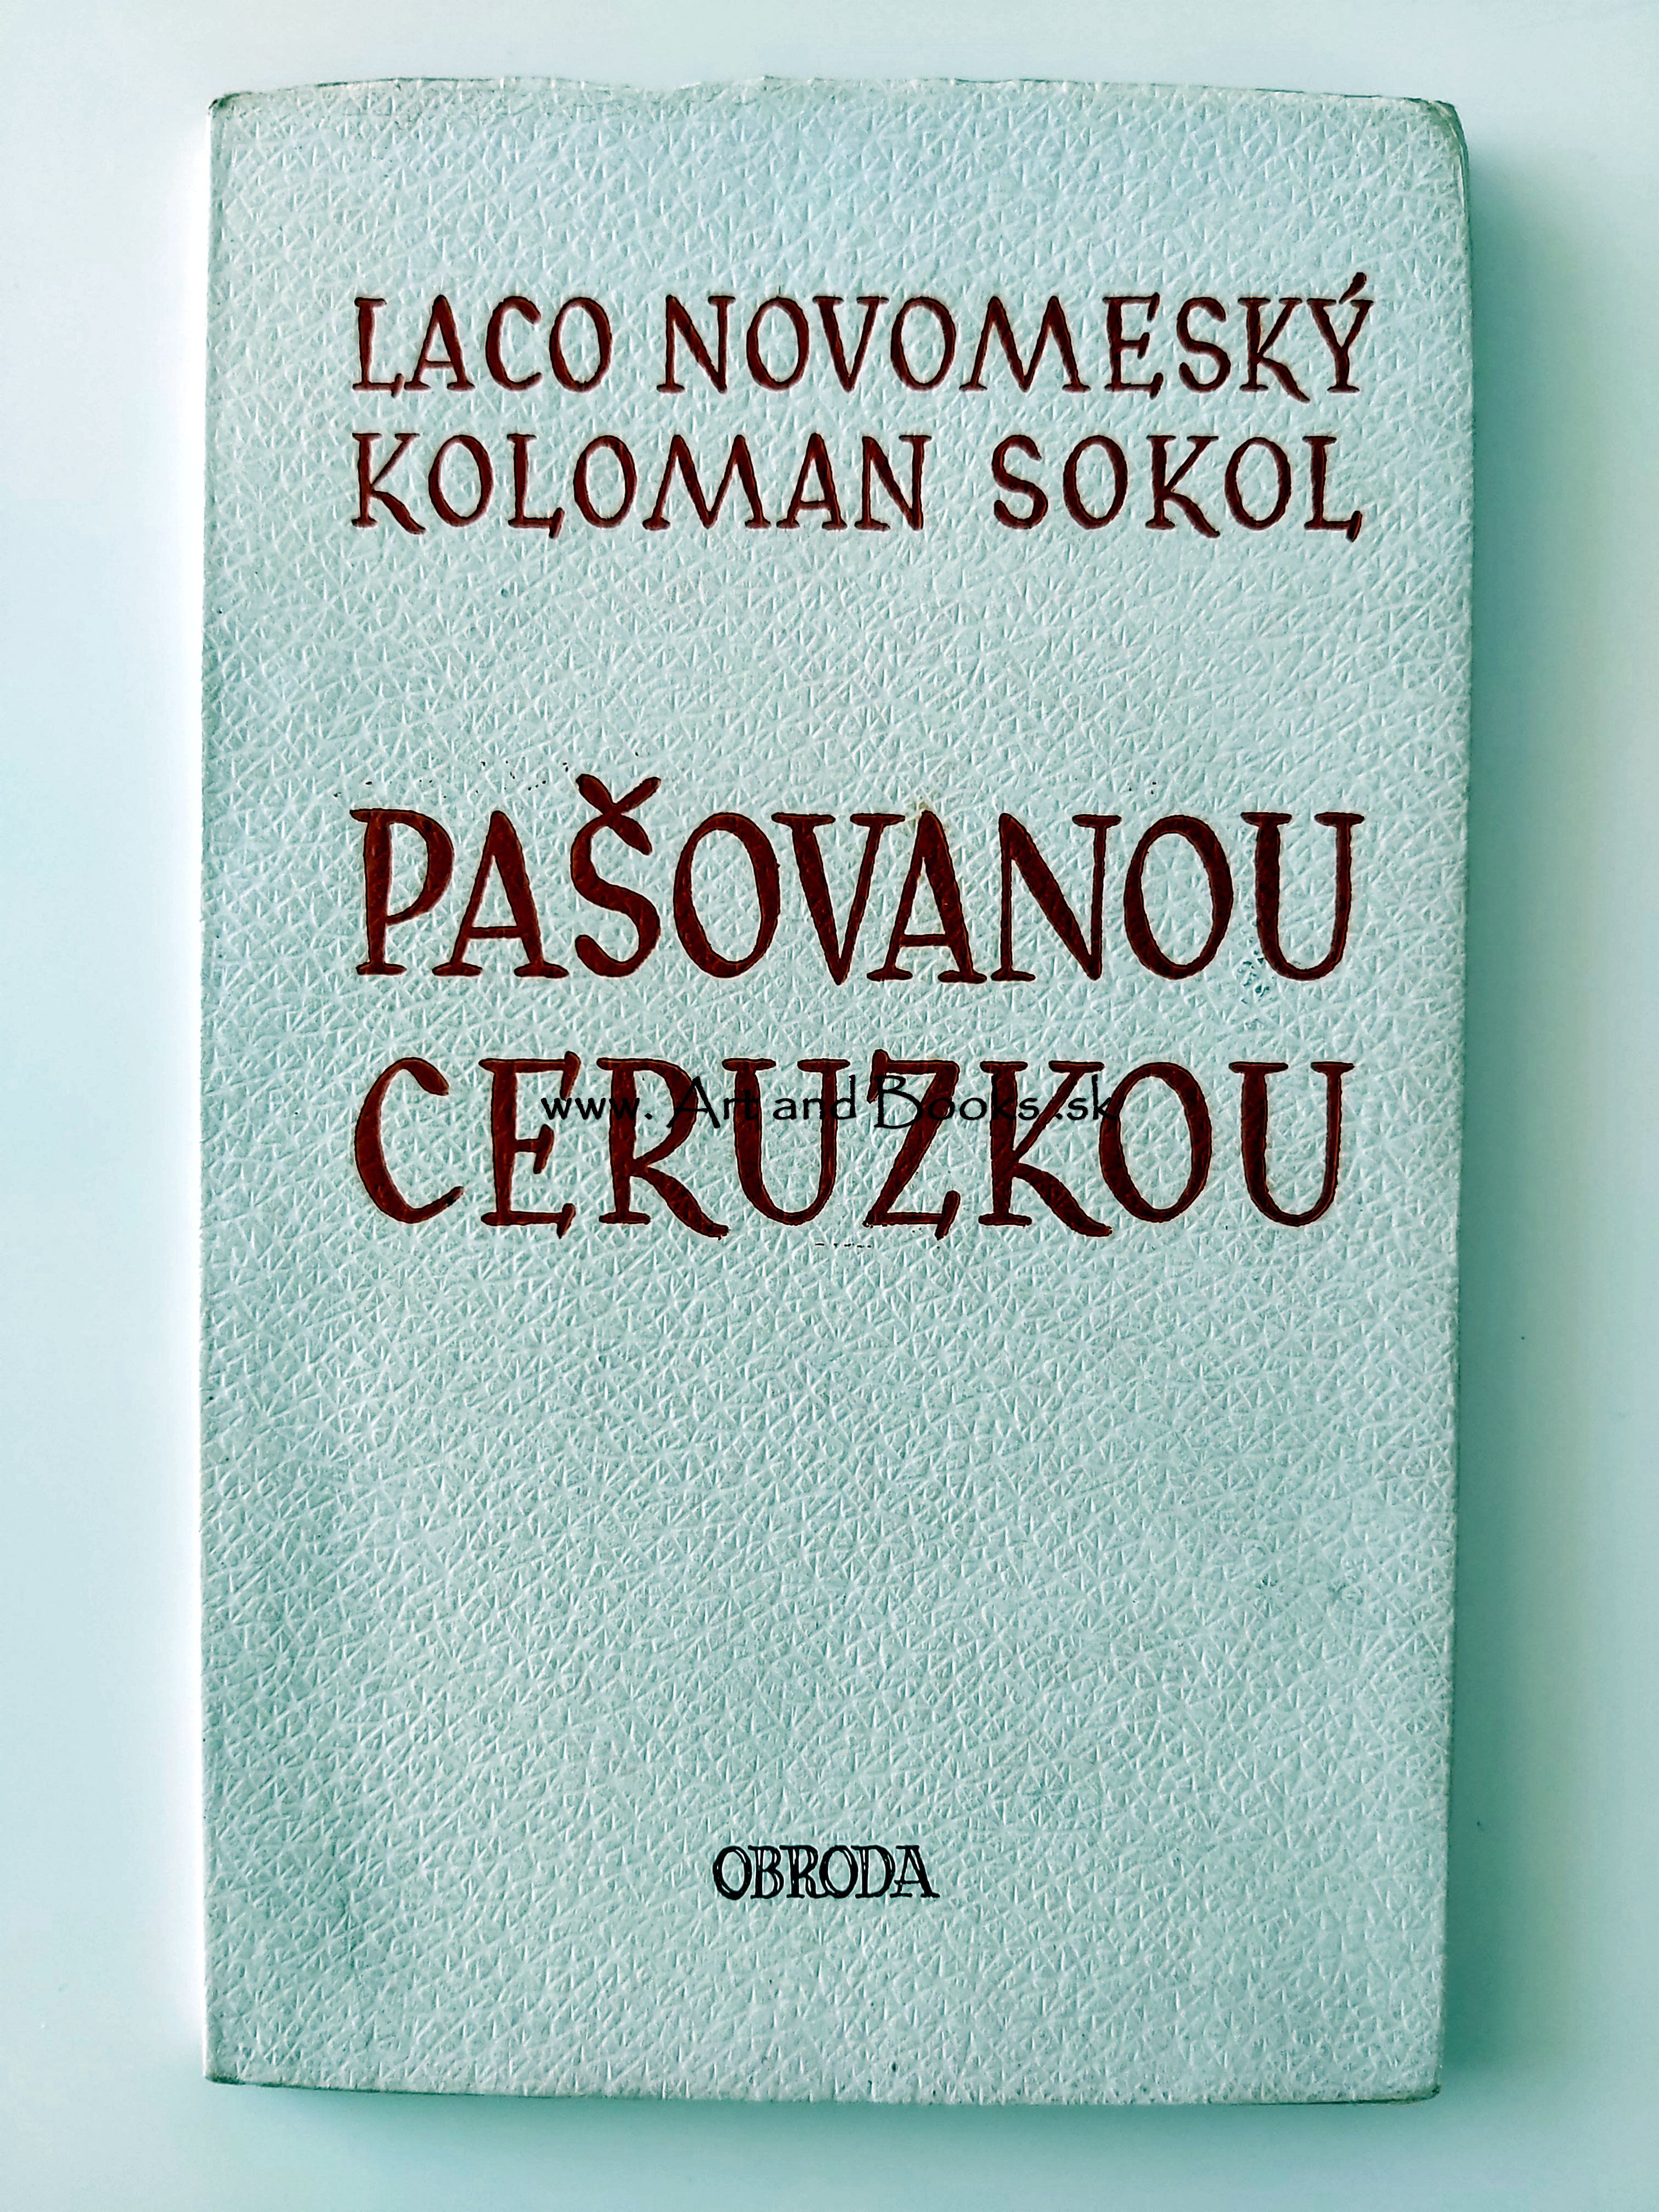 Laco Novomeský a Koloman Sokol - Pašovanou ceruzkou (1948) ● 134446